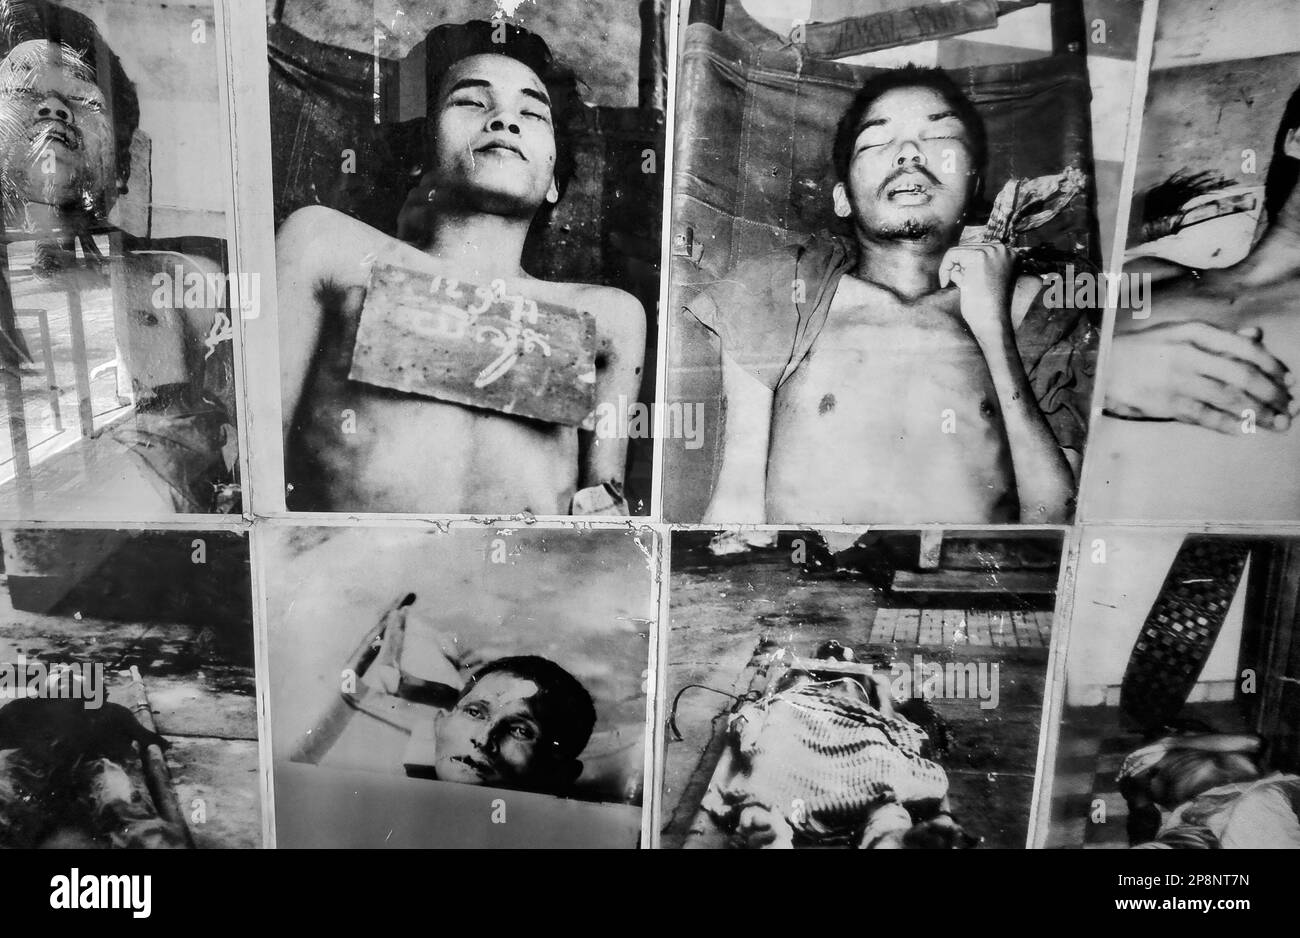 Porträts von Gefangenen, die nach der Ermordung durch die Roten Khmer im Tuol Sleng oder S-21 Folter- und Völkermord-Museum in Phnom Penh, Kambodscha, aufgenommen wurden Stockfoto